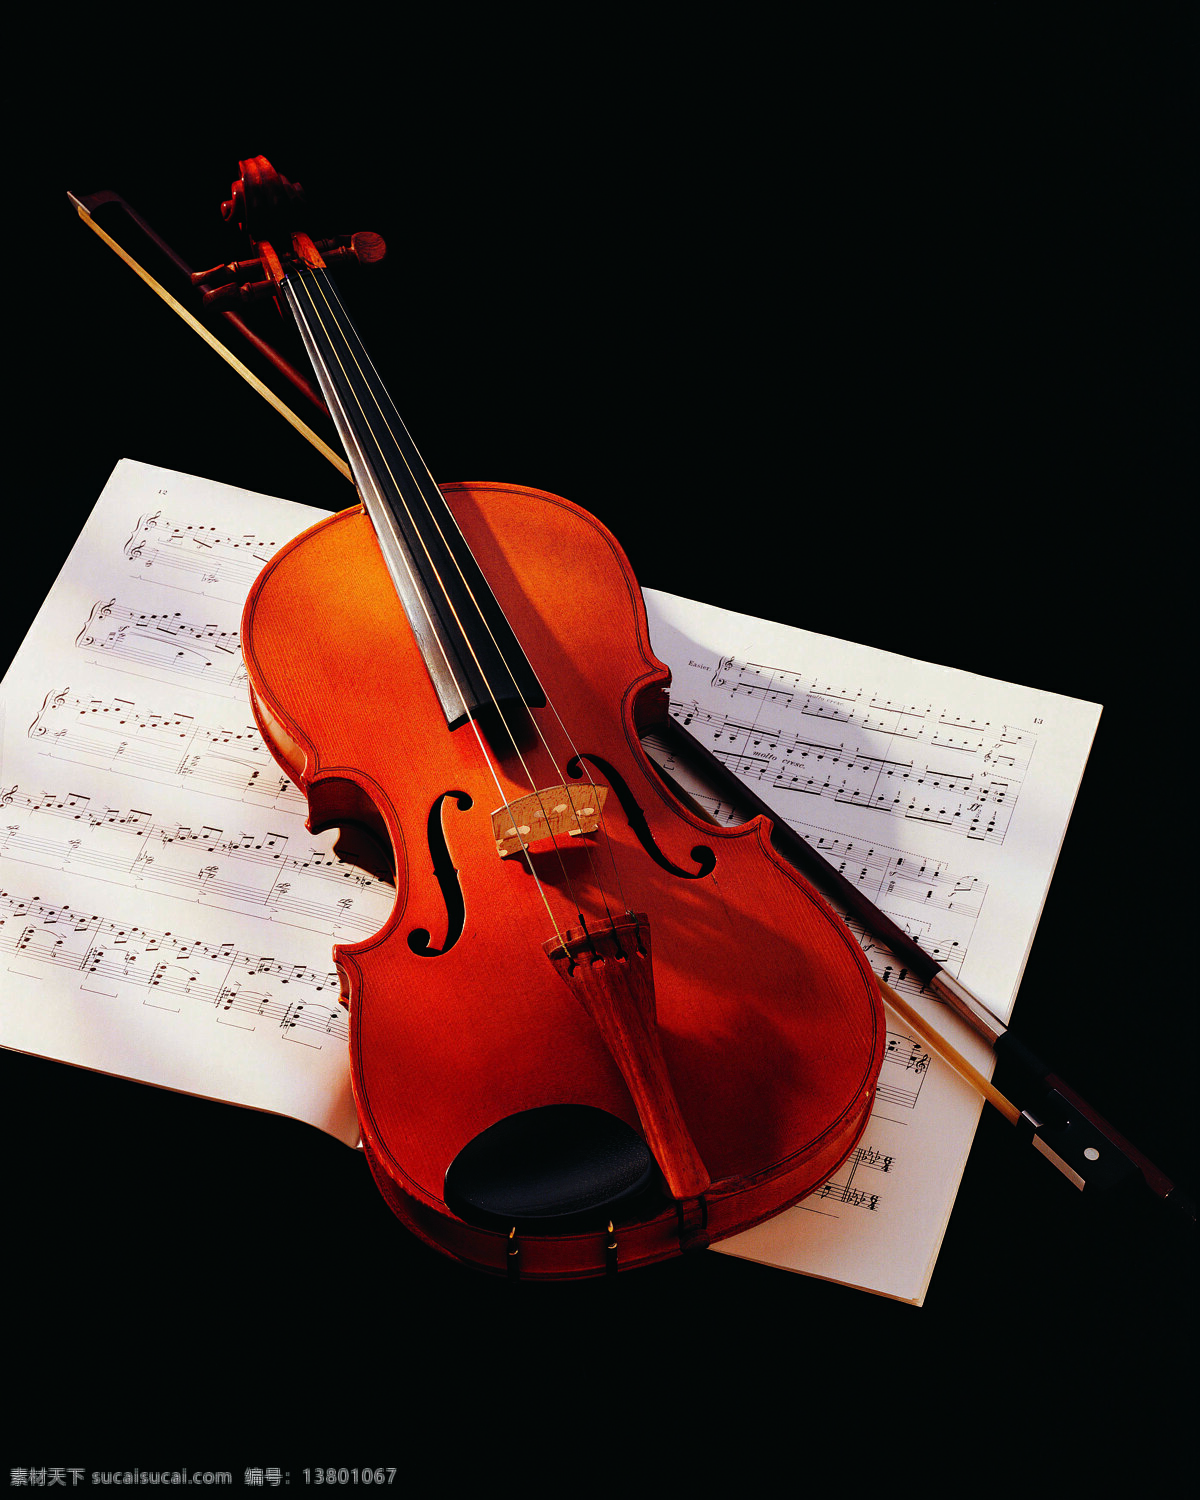 小提琴 音乐 情调生活 口味生活 专注 专业 娱乐休闲 生活百科